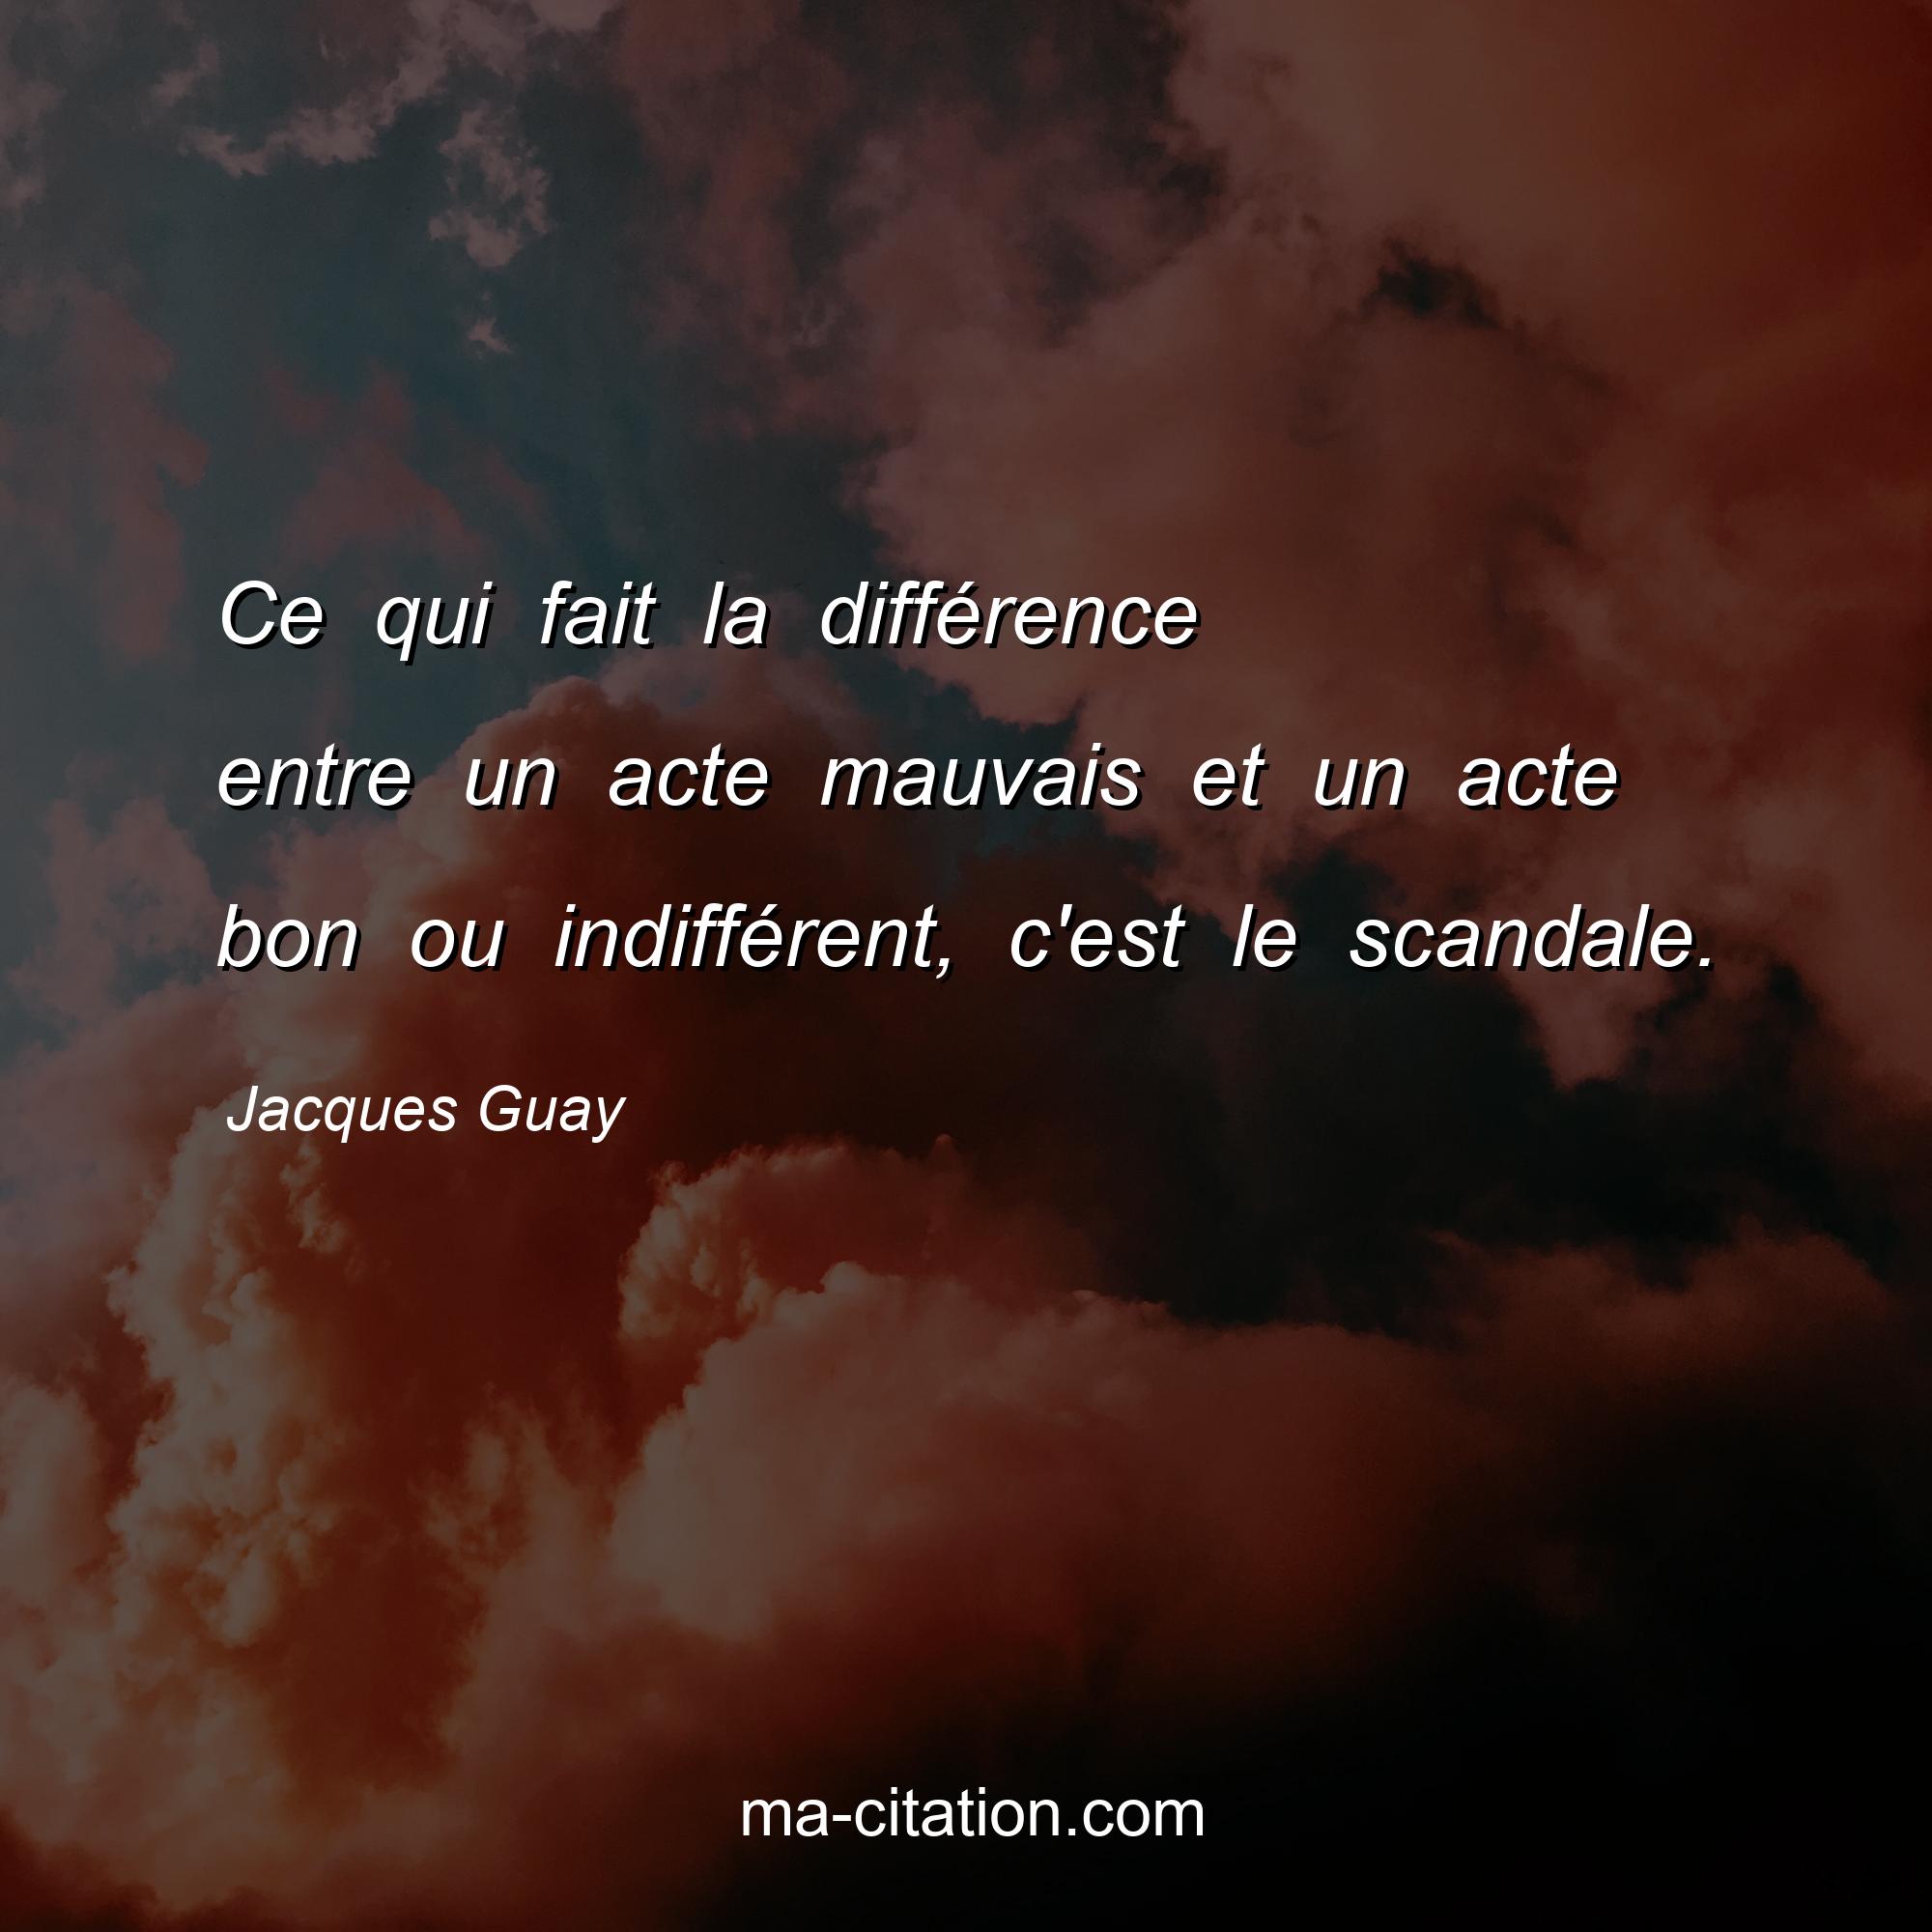 Jacques Guay : Ce qui fait la différence entre un acte mauvais et un acte bon ou indifférent, c'est le scandale.